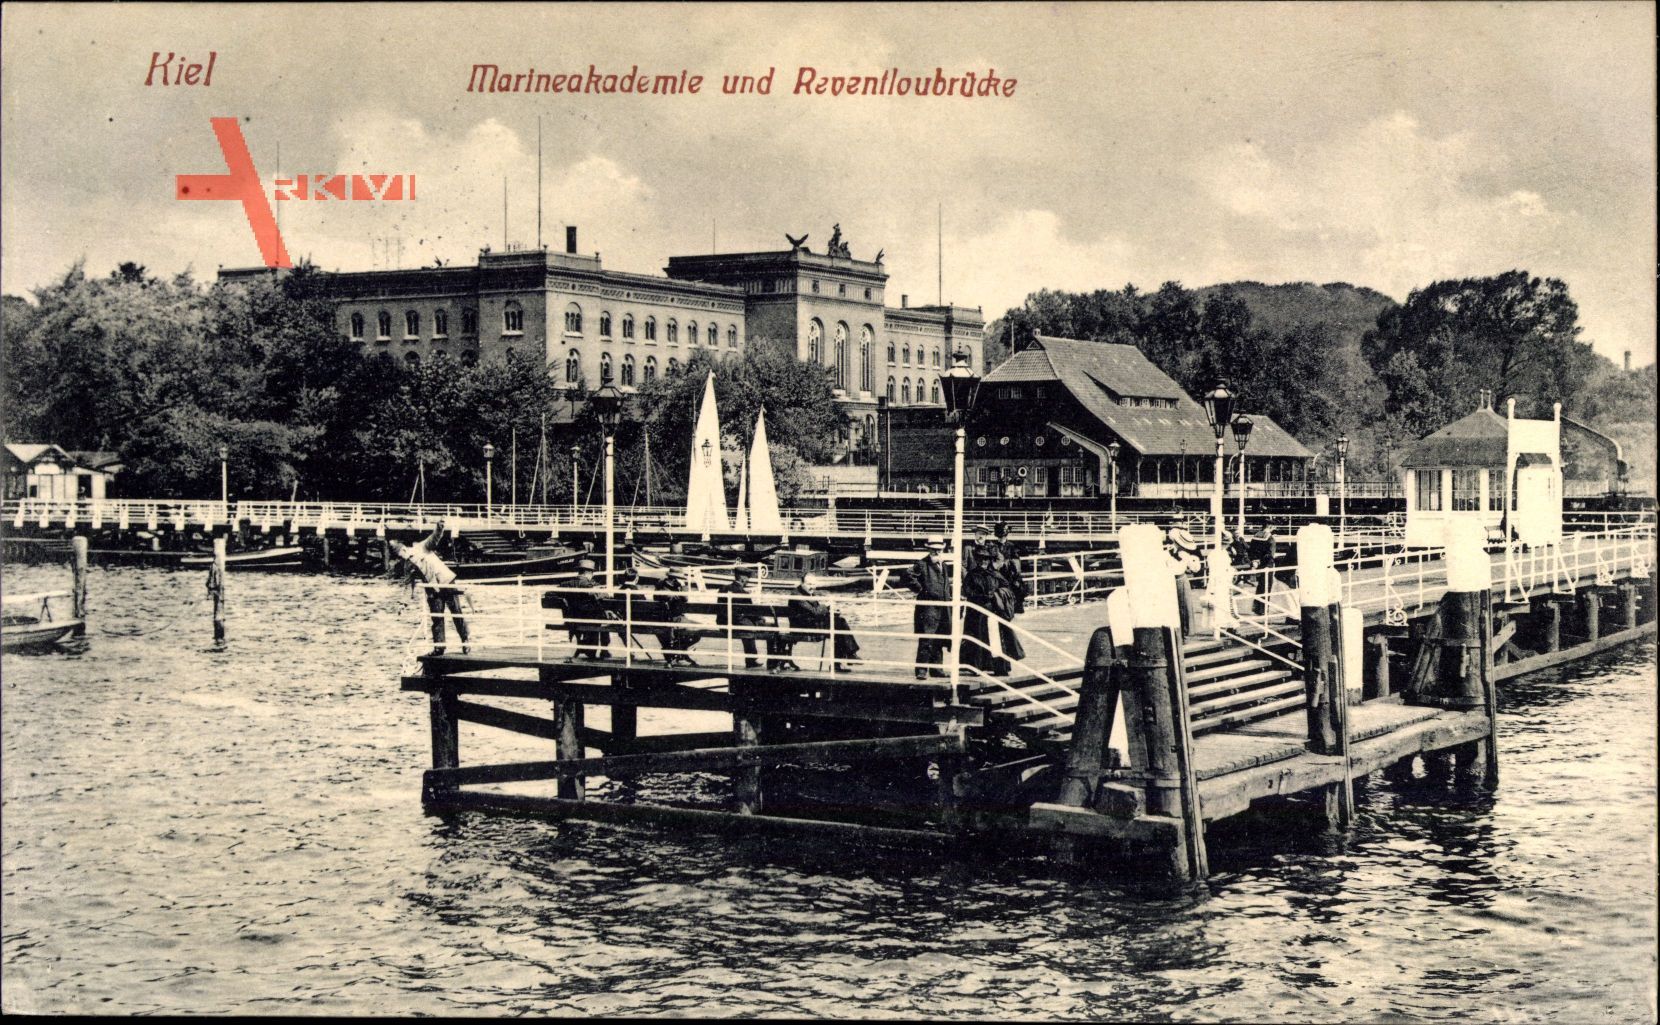 Kiel in Schleswig Holstein, Marineakademie und Reventloubrücke